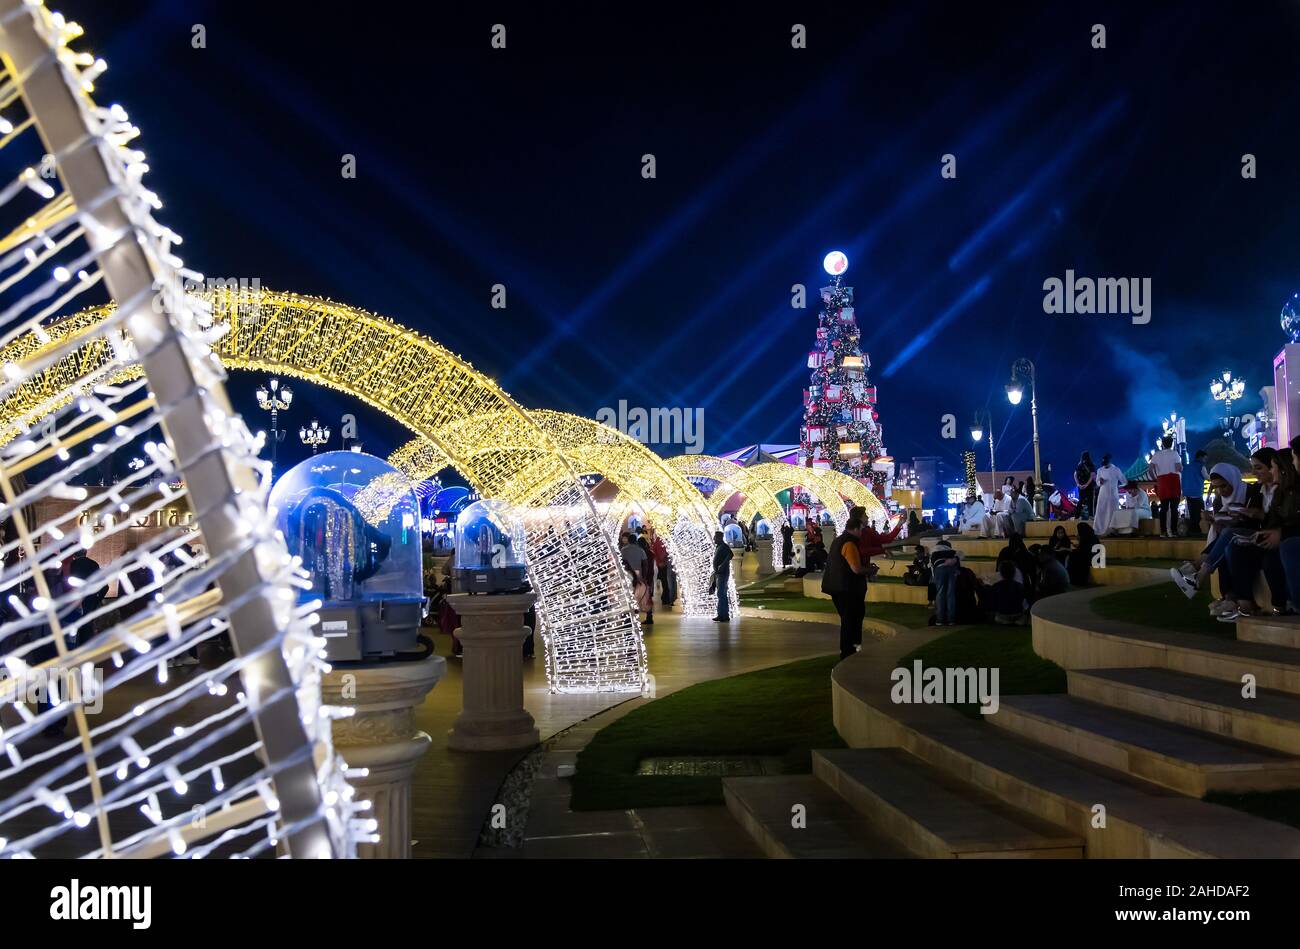 Dubai, Vereinigte Arabische Emirate - Dezember 26, 2018: Global Village mit großen Weihnachtsbaum und Winterurlaub Dekorationen in Dubai, VAE. Eine der am meisten Stockfoto